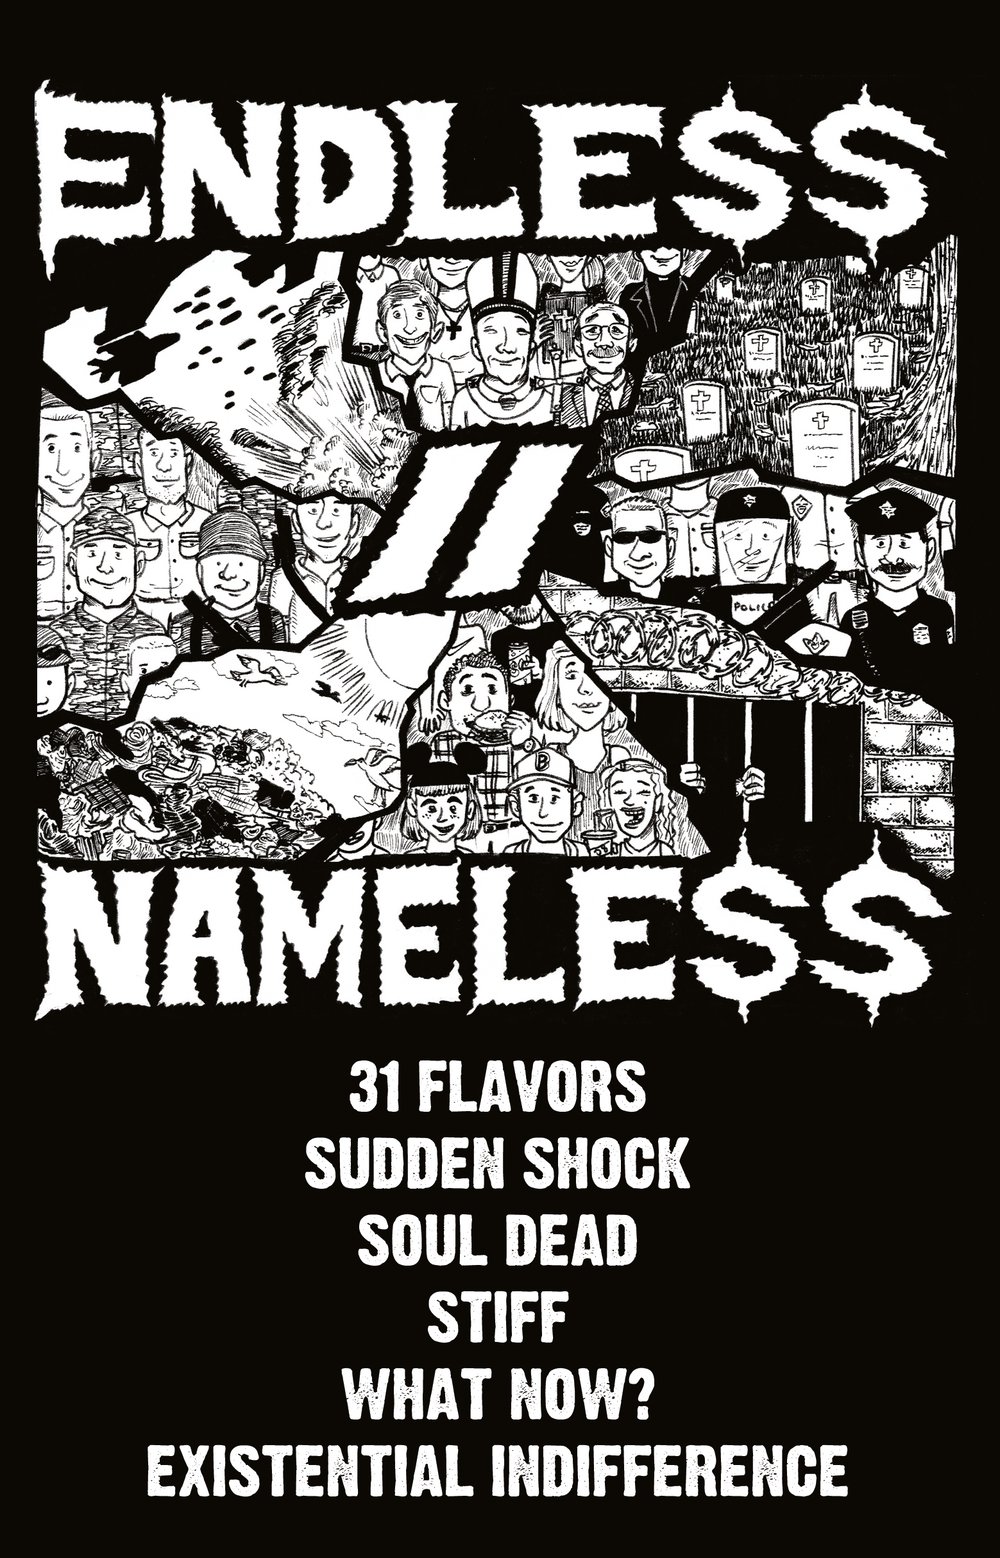 Endless//Nameless - ST cassette